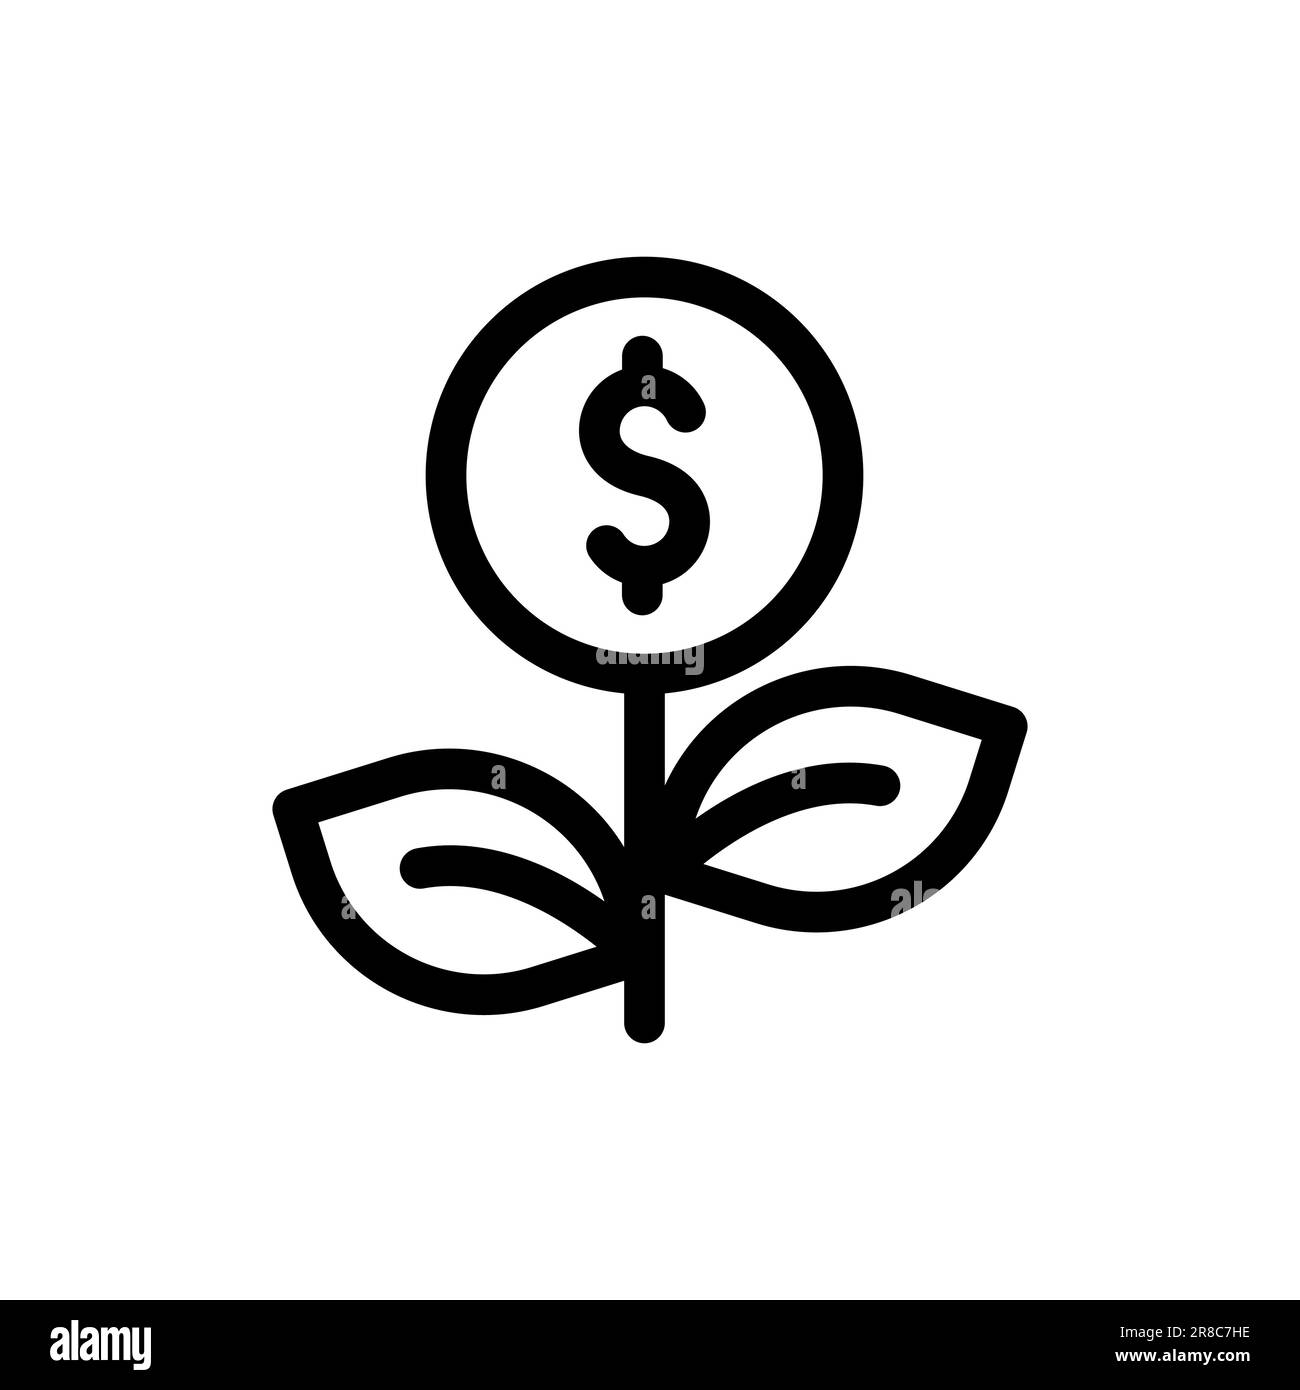 Icona del logo della pianta dell'albero dei soldi con il dollaro della moneta. Business profit investment, finanza istruzione, reddito d'impresa, business development concept. vettore Illustrazione Vettoriale